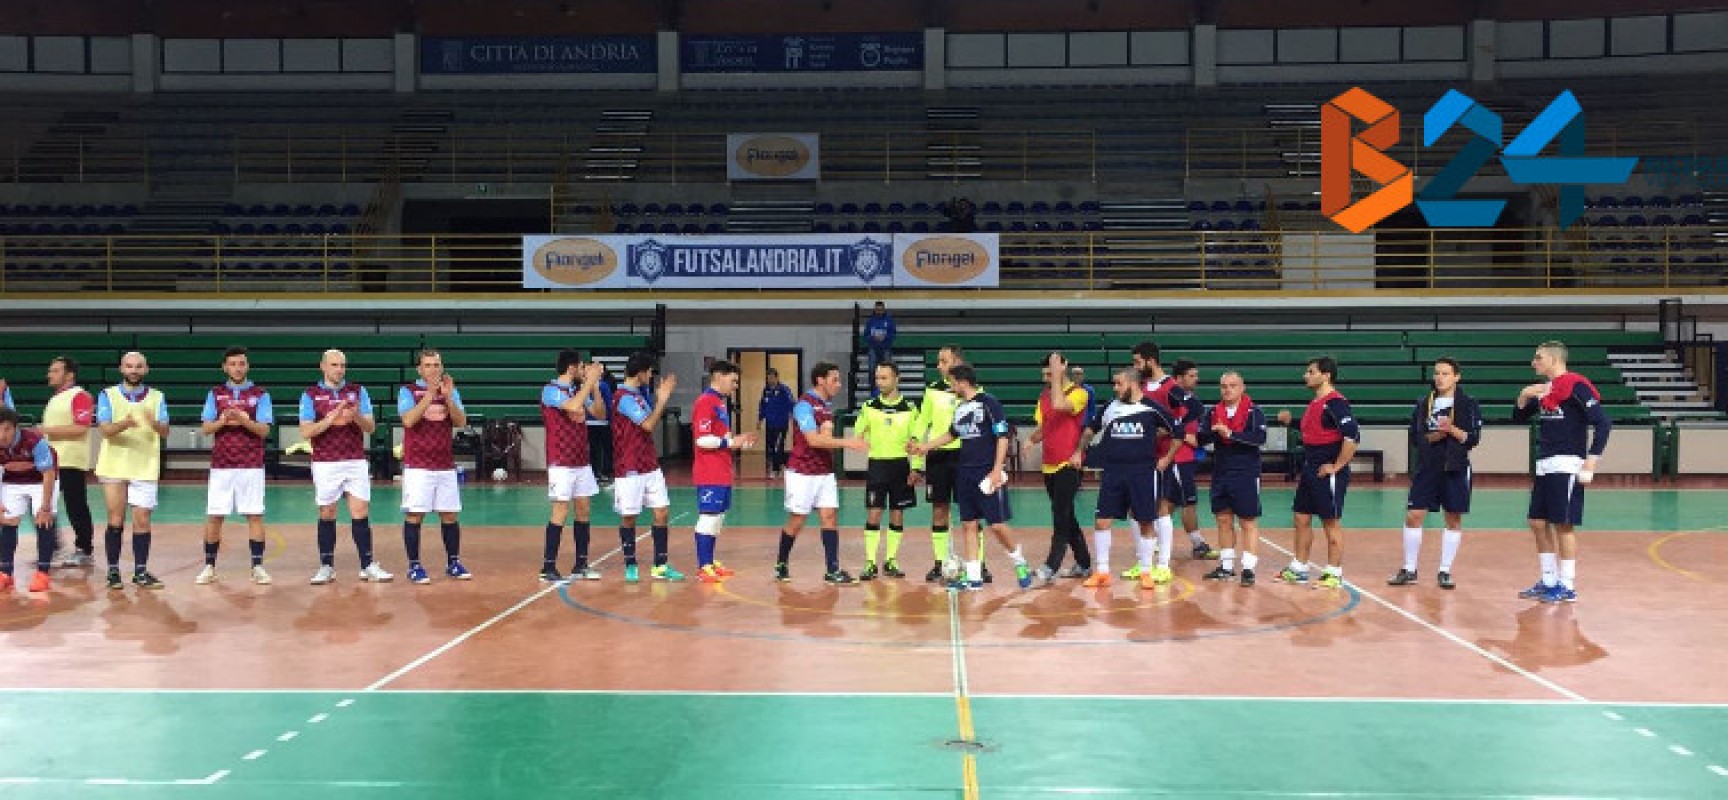 Futsal serie C1: Nettuno soccombe ad Andria / RISULTATI E CLASSIFICA